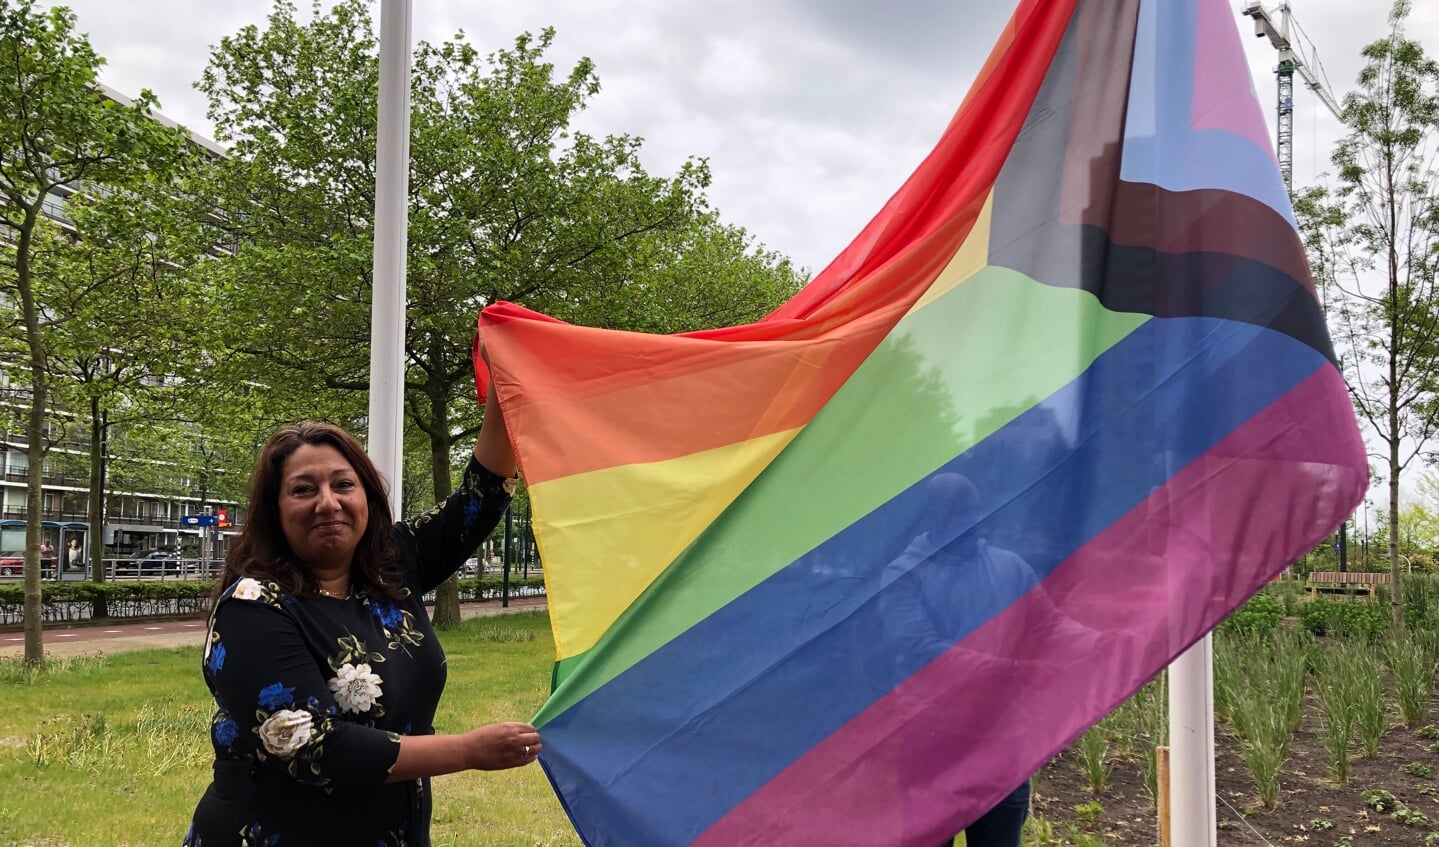 Wethouder Johanna Besteman (o.a. Welzijn) vlak voor het hijsen van de regenboogvlag, die dit jaar ook de kleuren draagt van het COC.